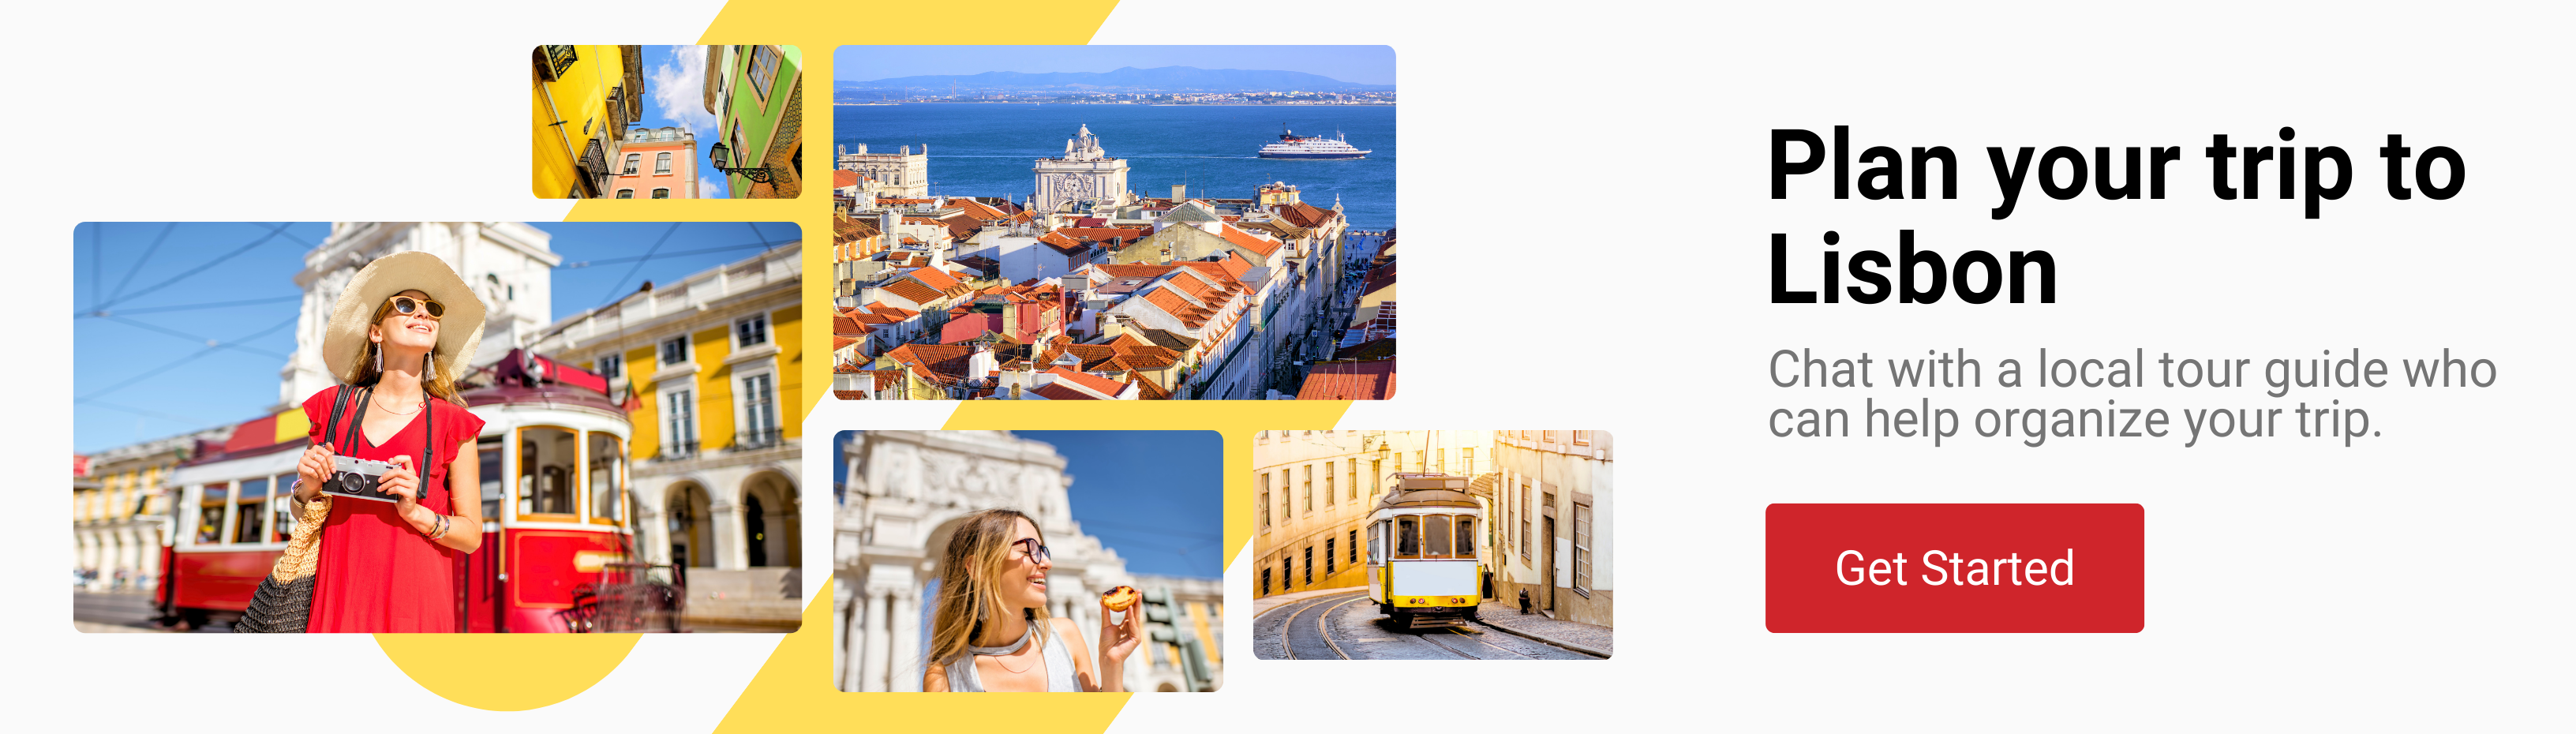 Lisbon tour guides